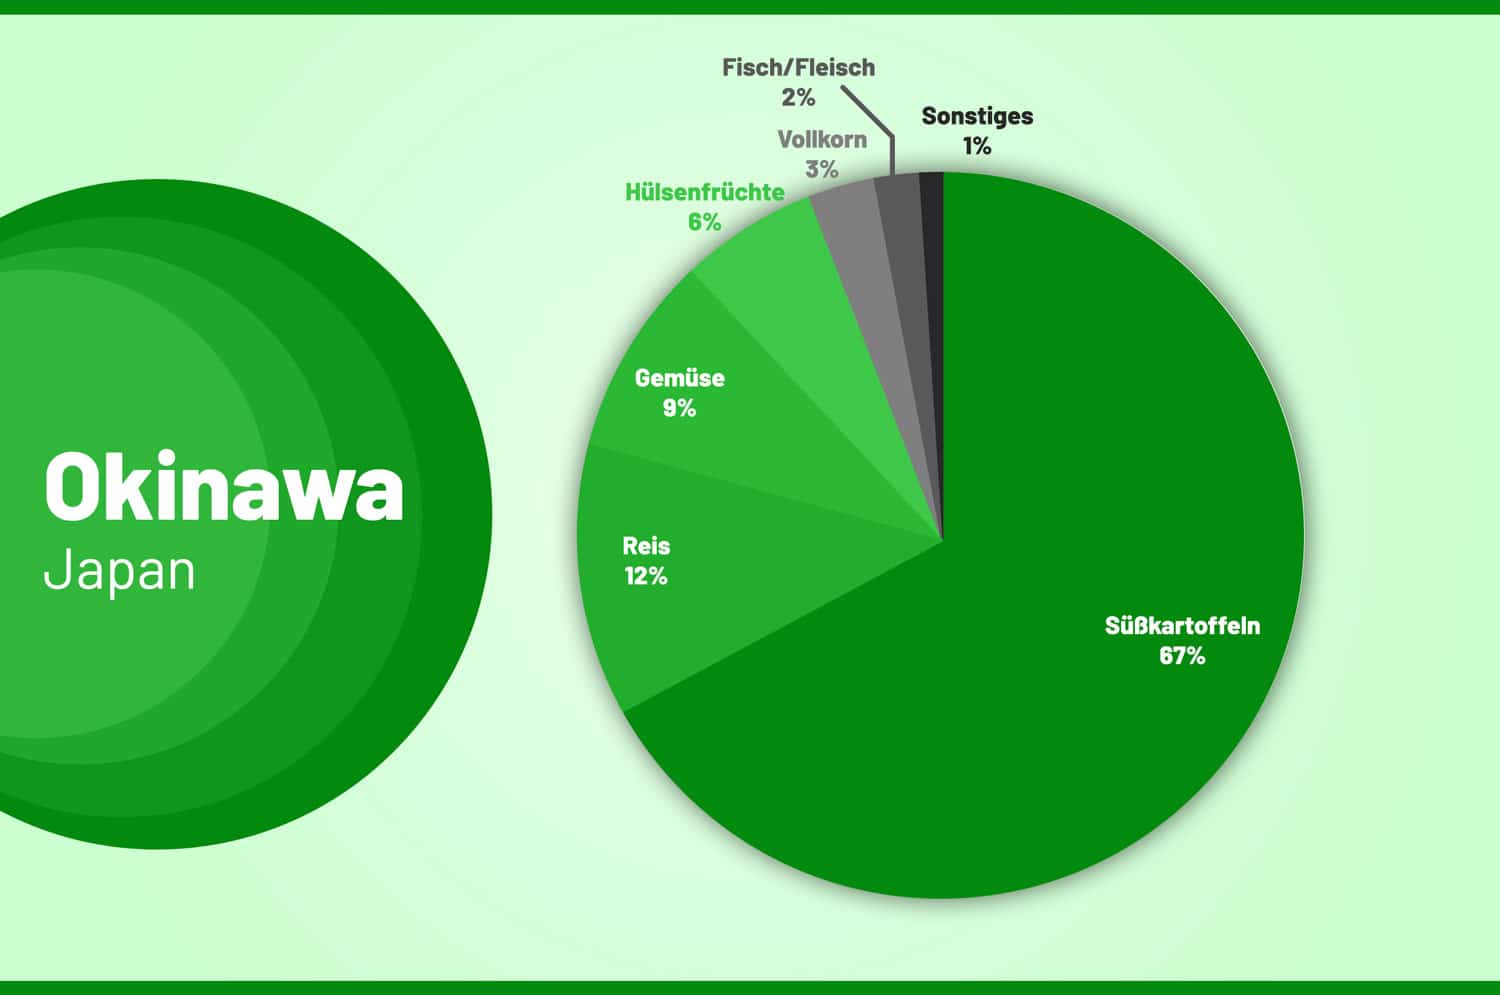 Die Zusammensetzung der Ernährung in Okinawa, Japan